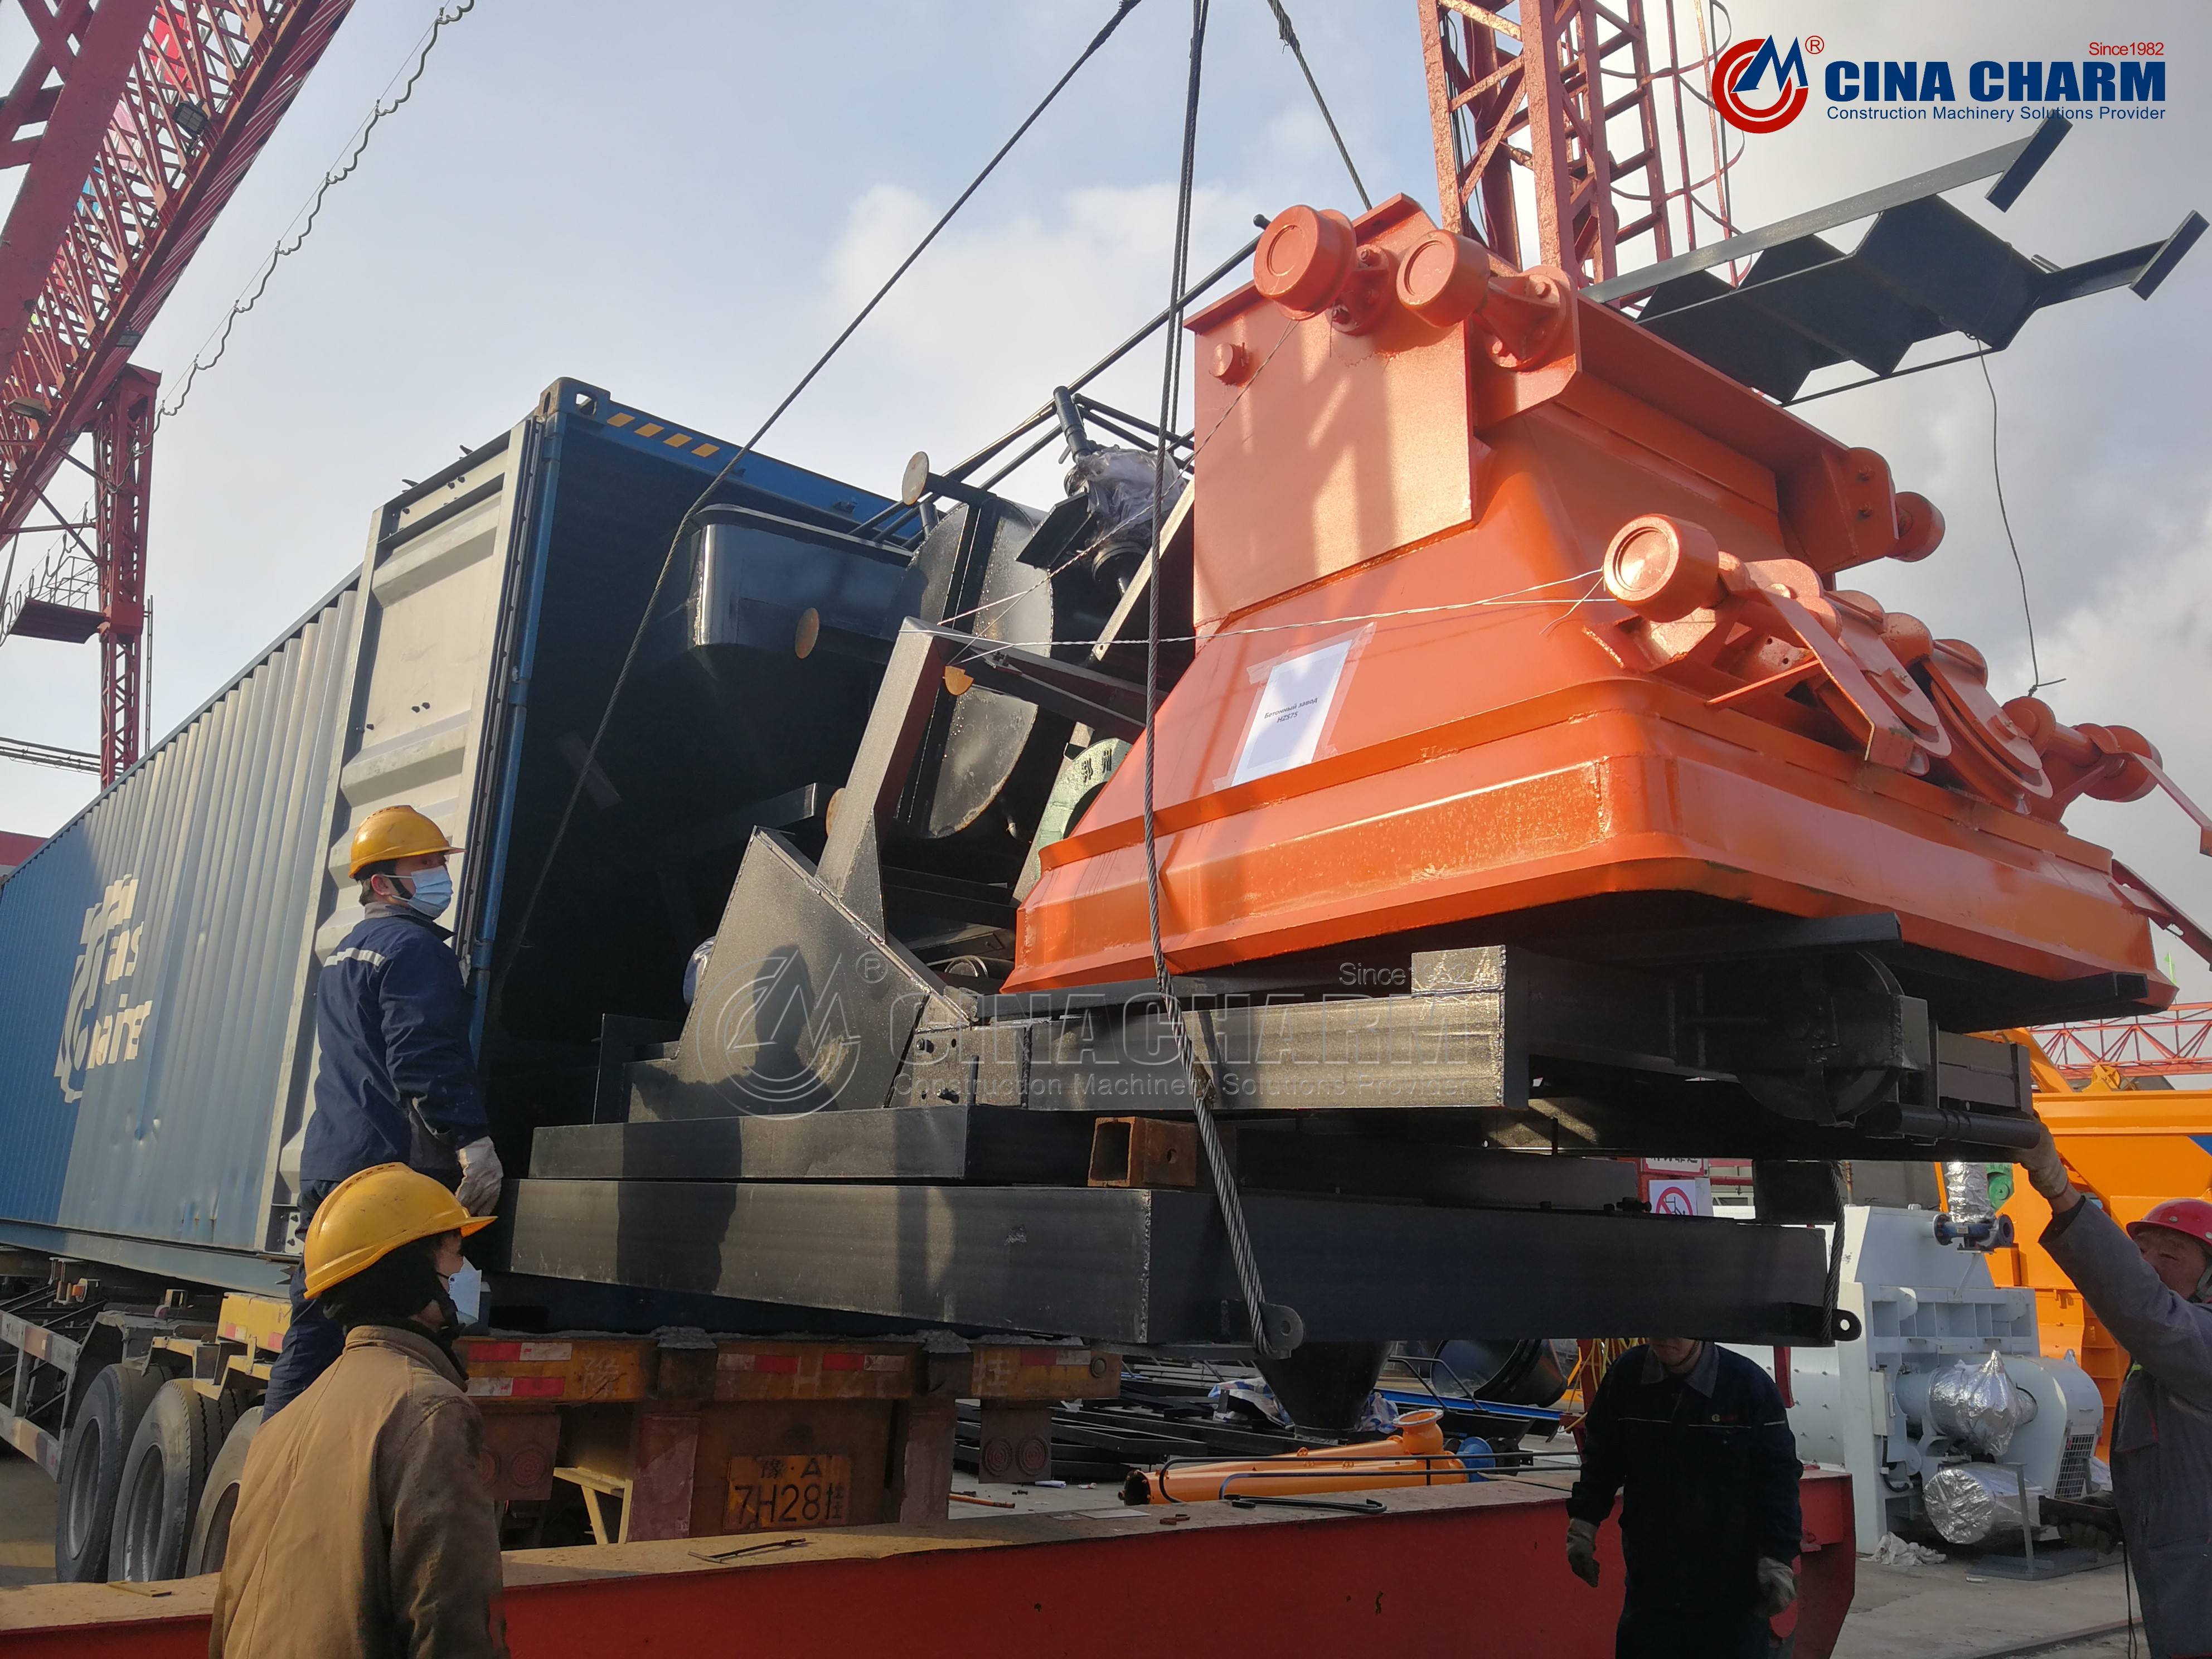 Henan Xingchang – Changli HZS75 concrete batching plant loading shipped to customer countries